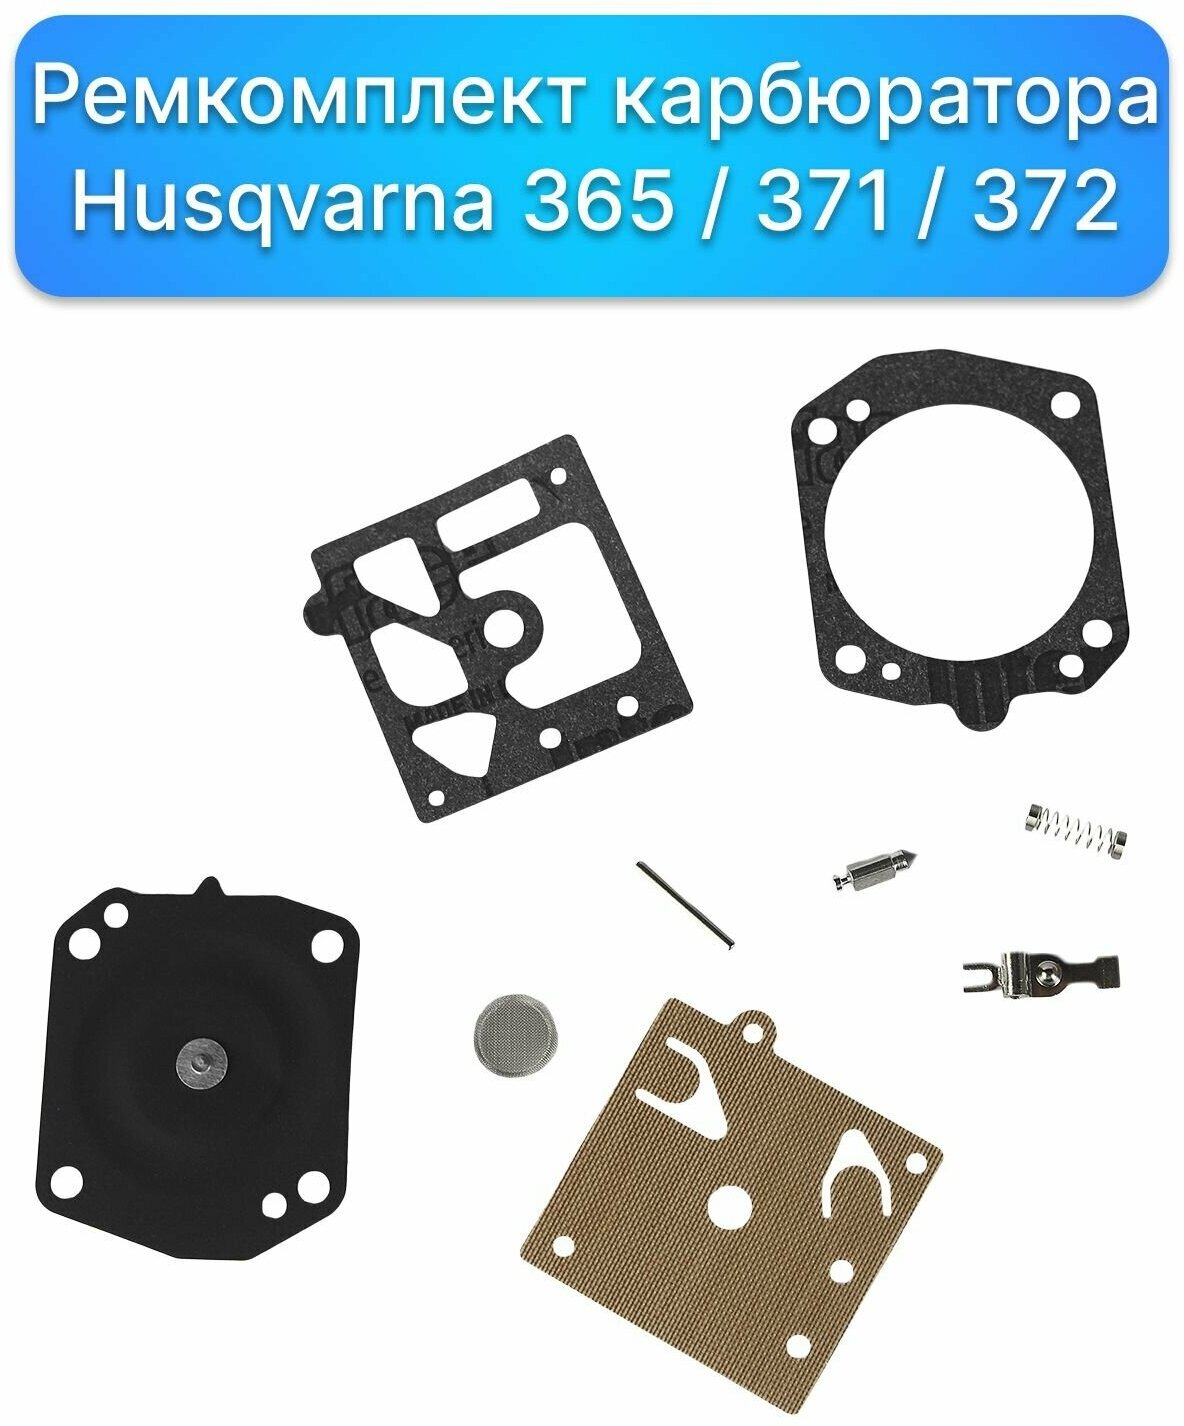 Ремкомплект карбюратора бензопилы Husqvarna 365 / 371 / 372 Запчасти комплектующие для ремонта двигателя